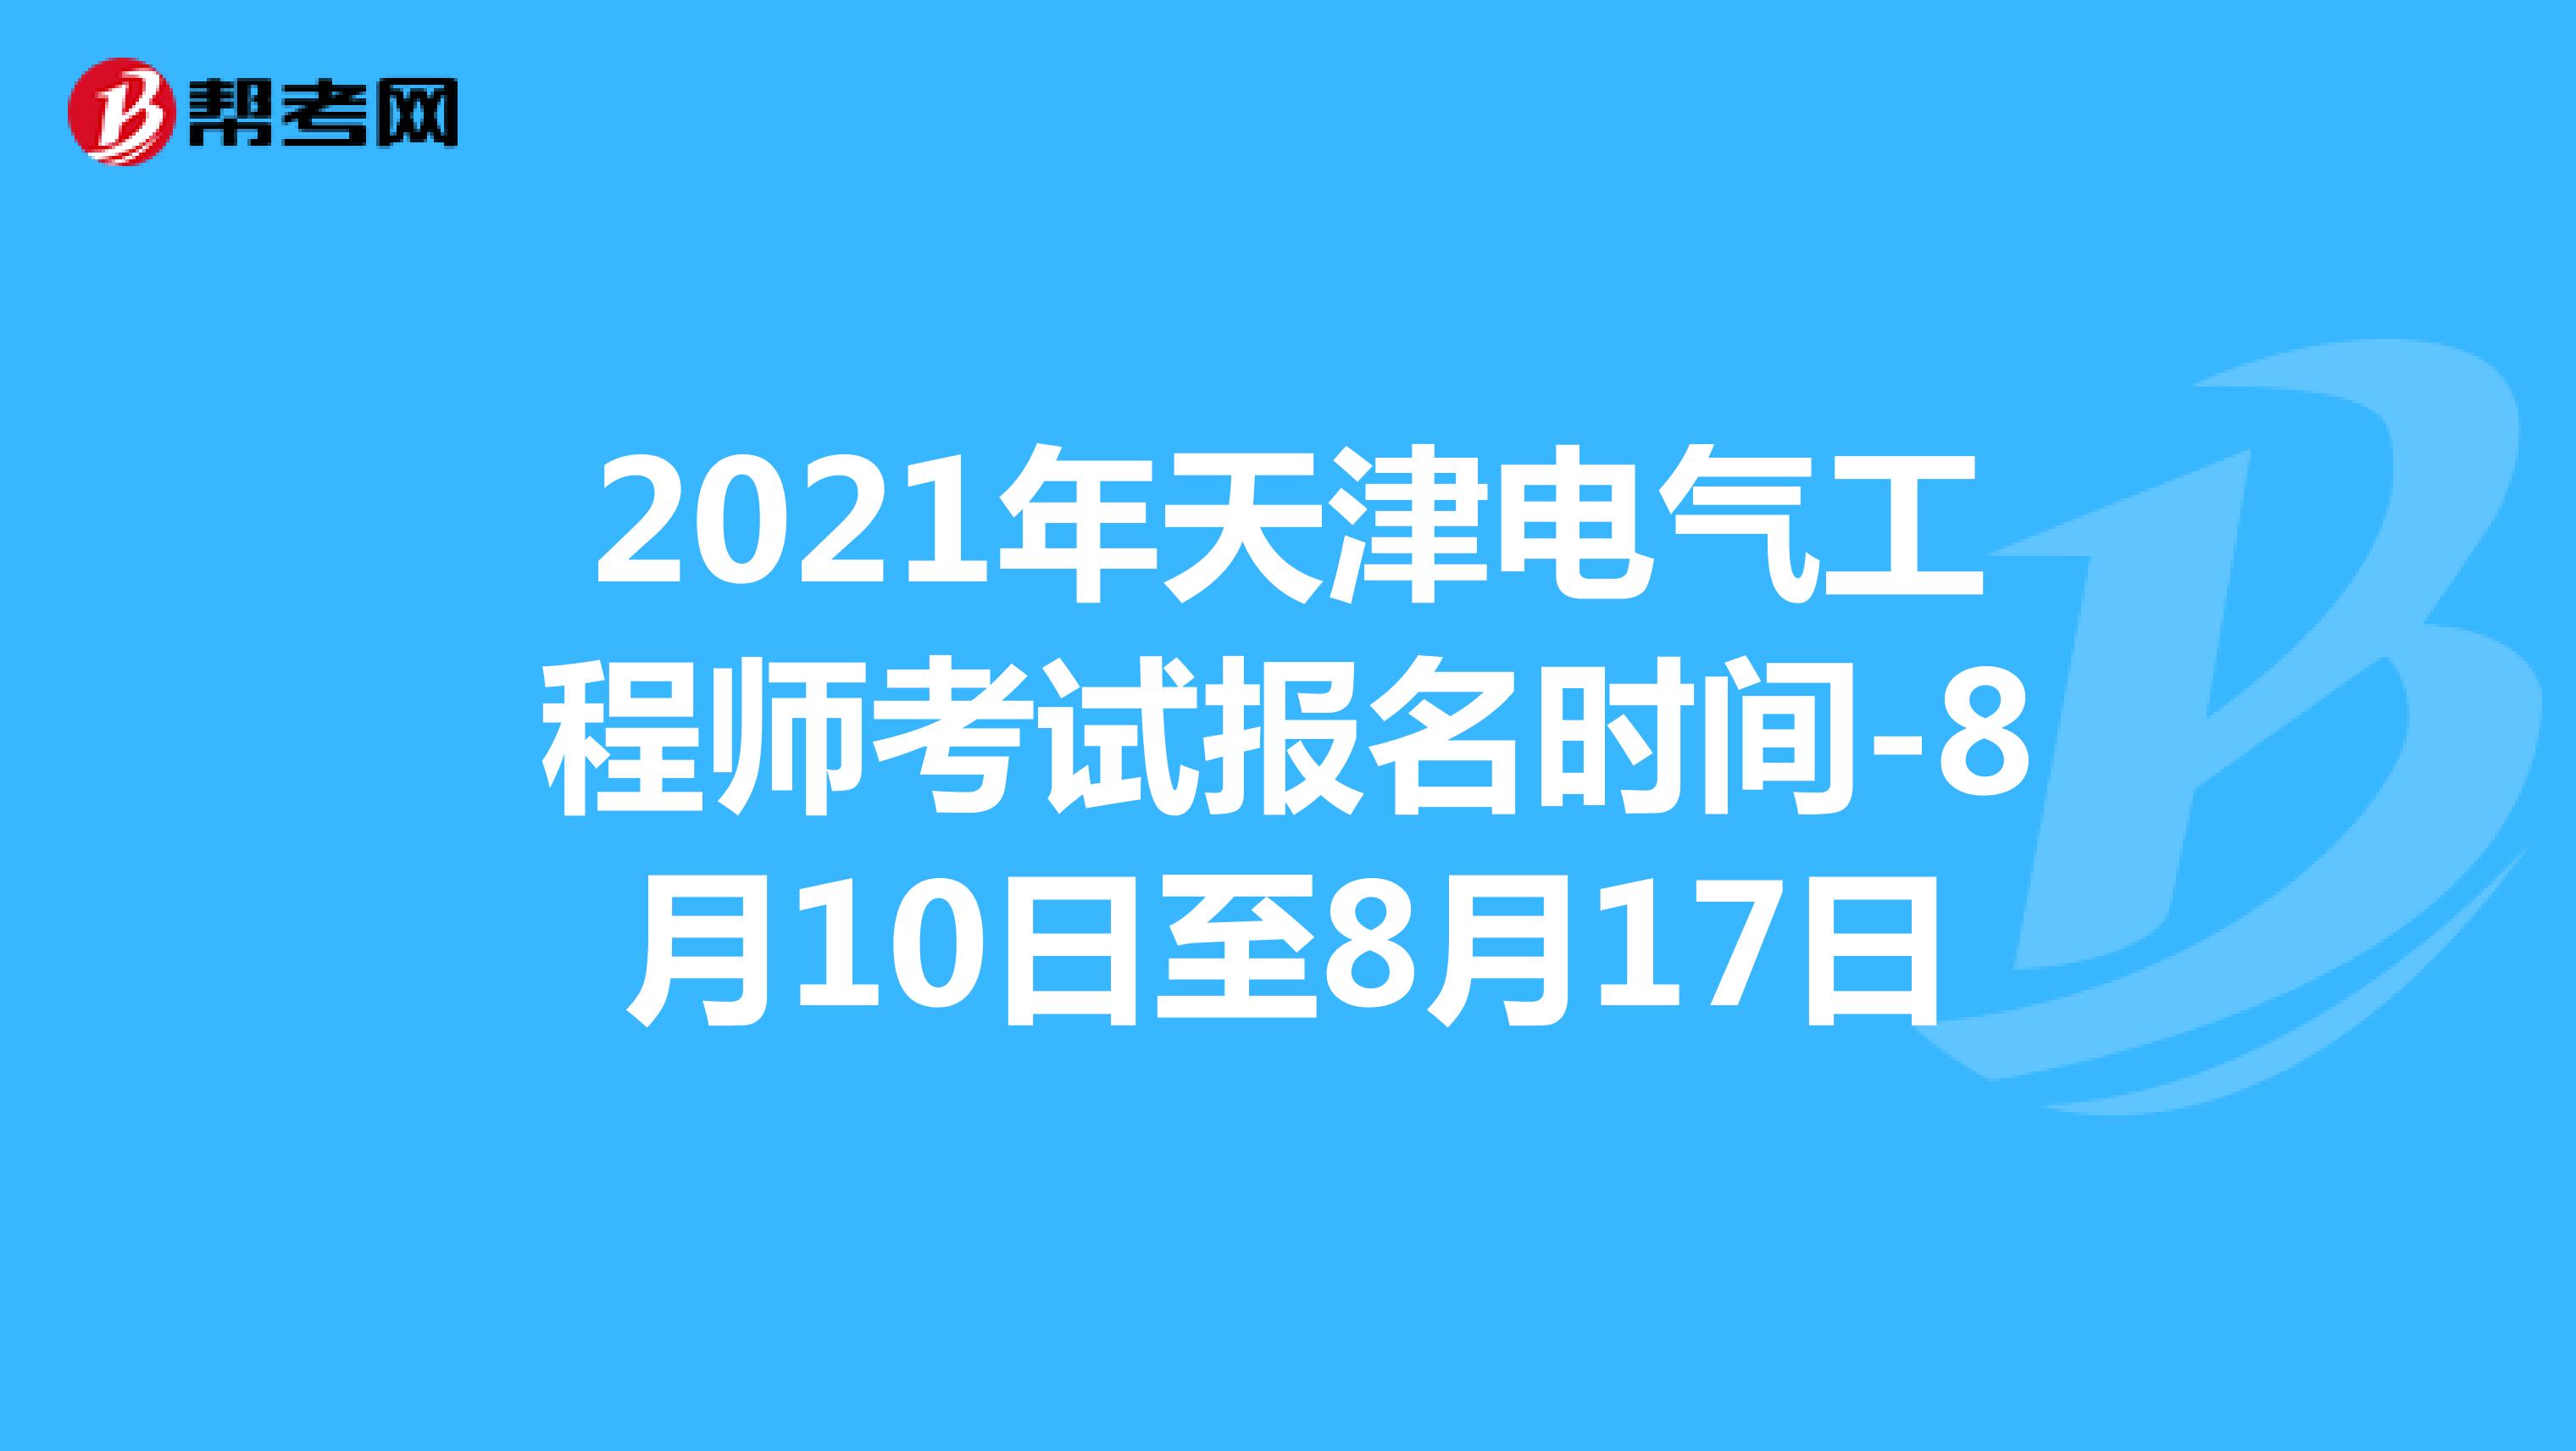 2021年天津电气工程师考试报名时间-8月10日至8月17日